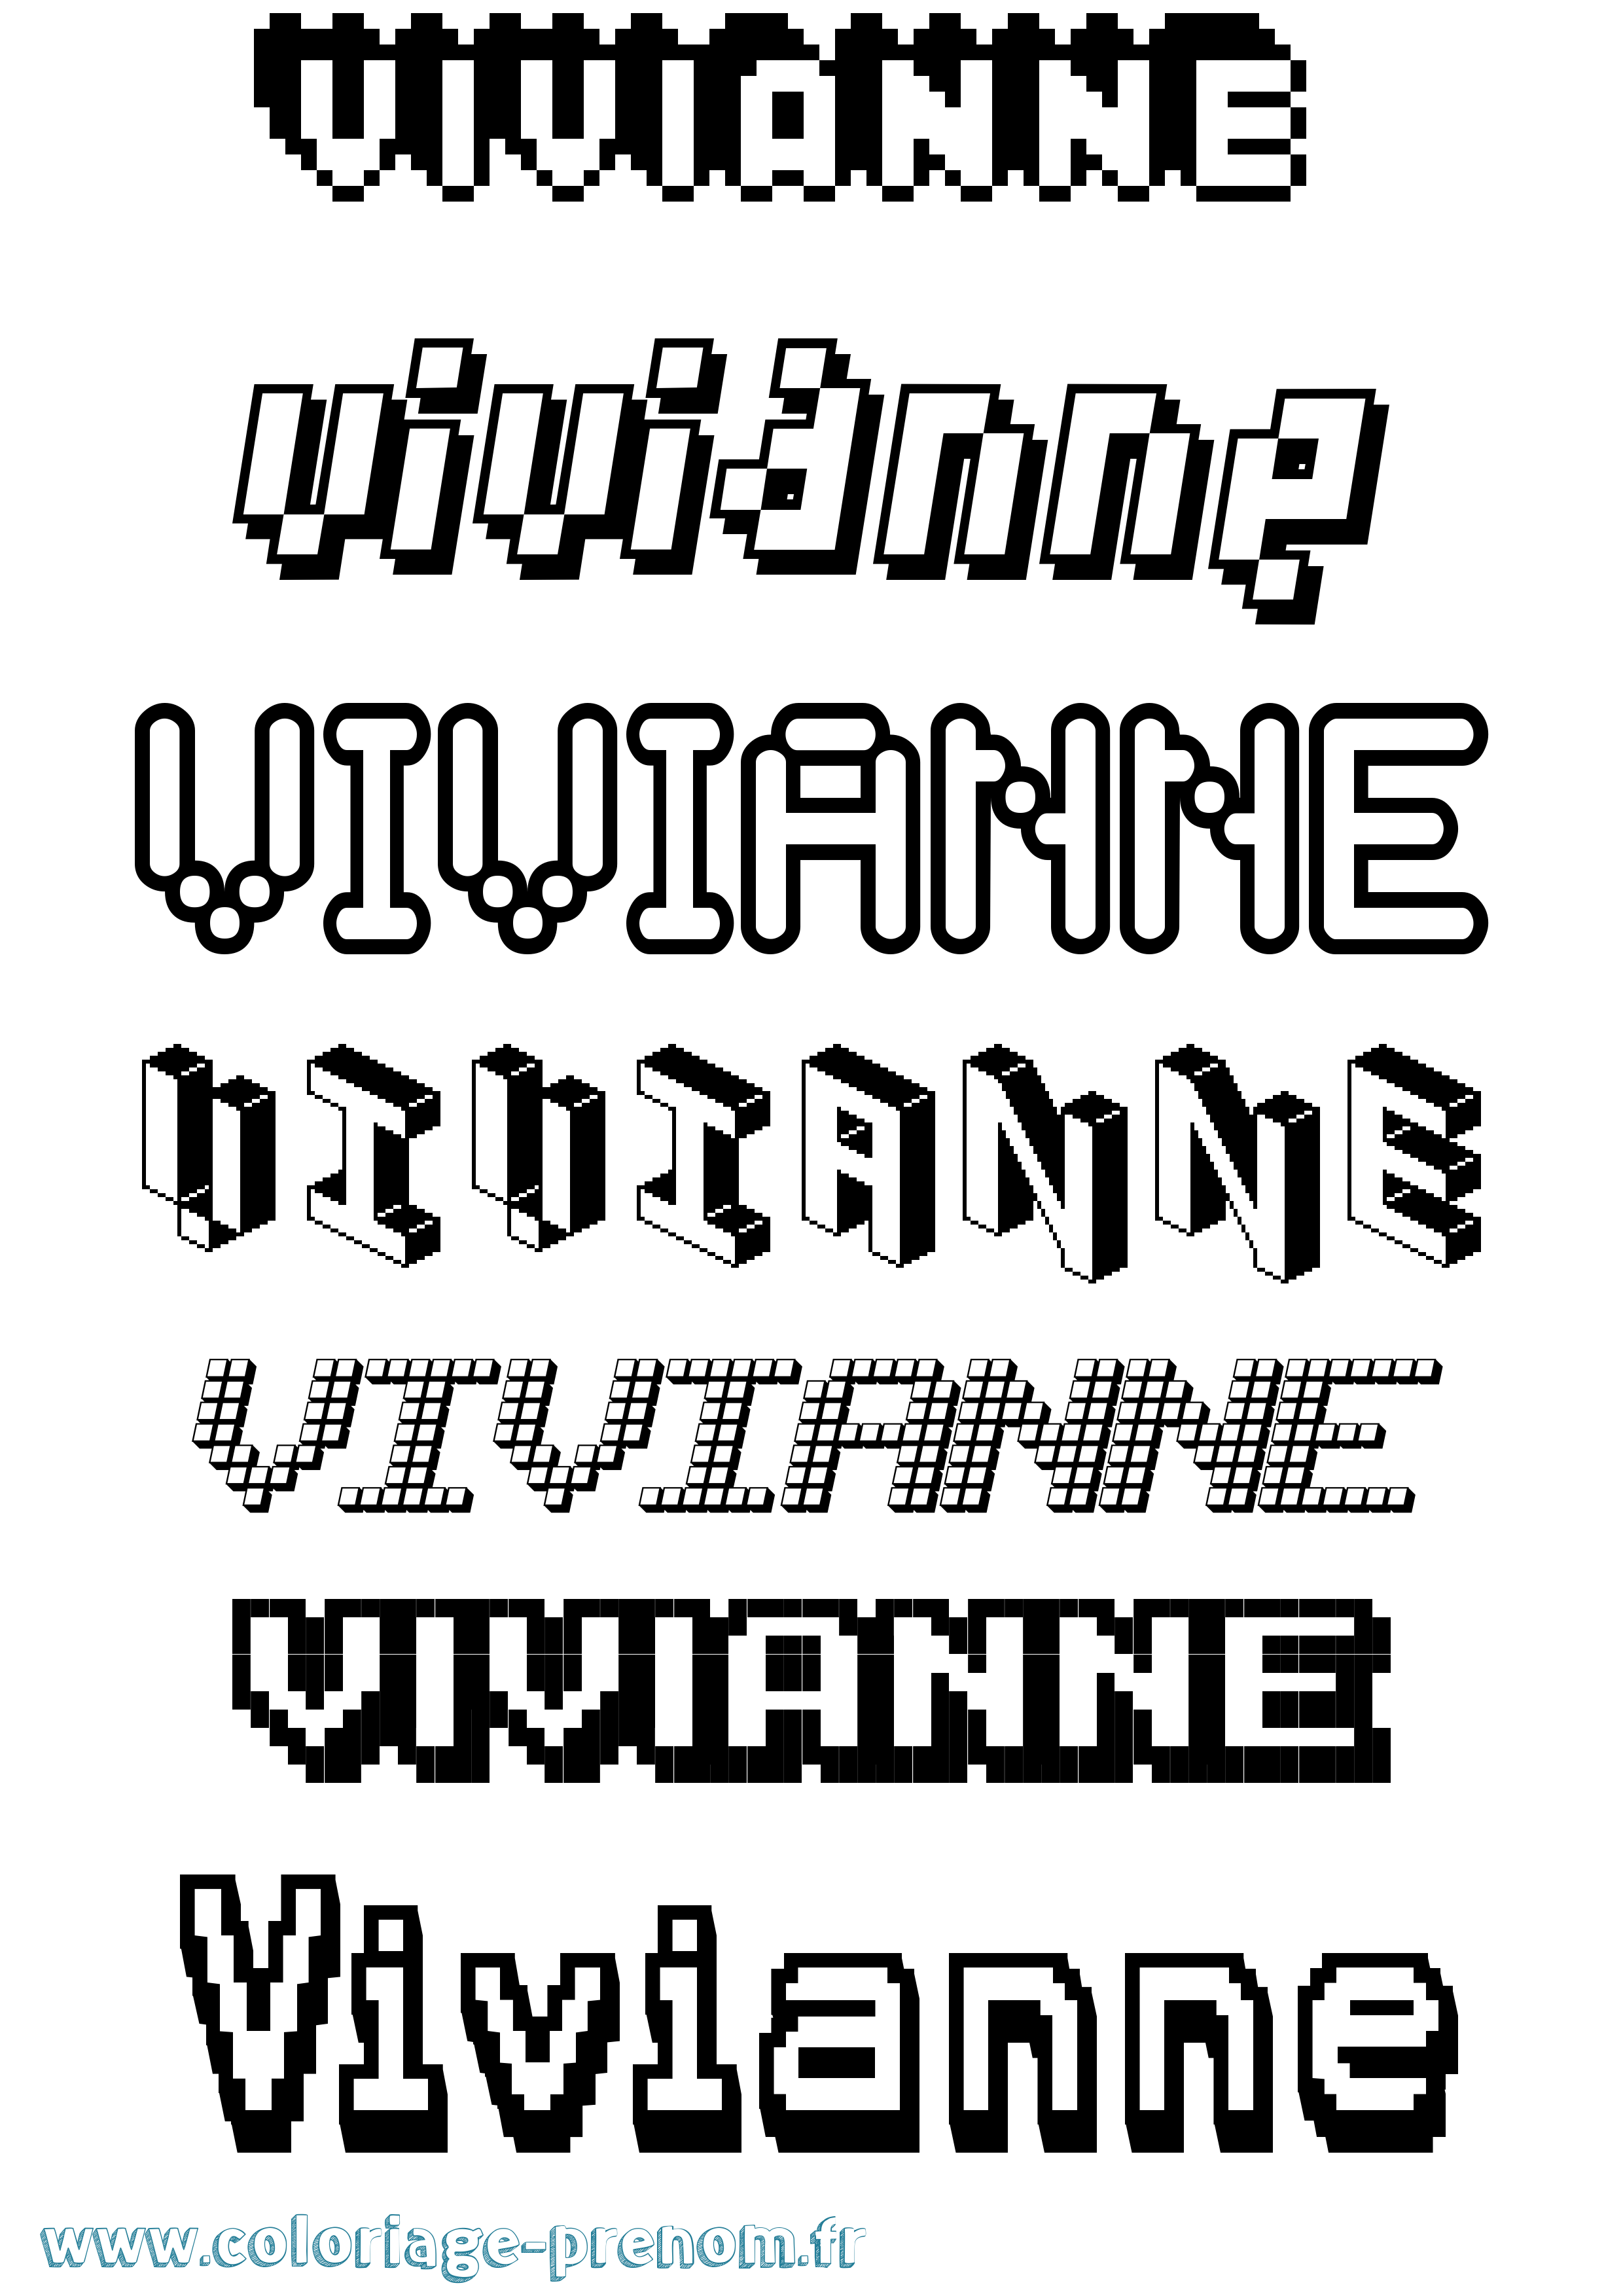 Coloriage prénom Vivianne Pixel